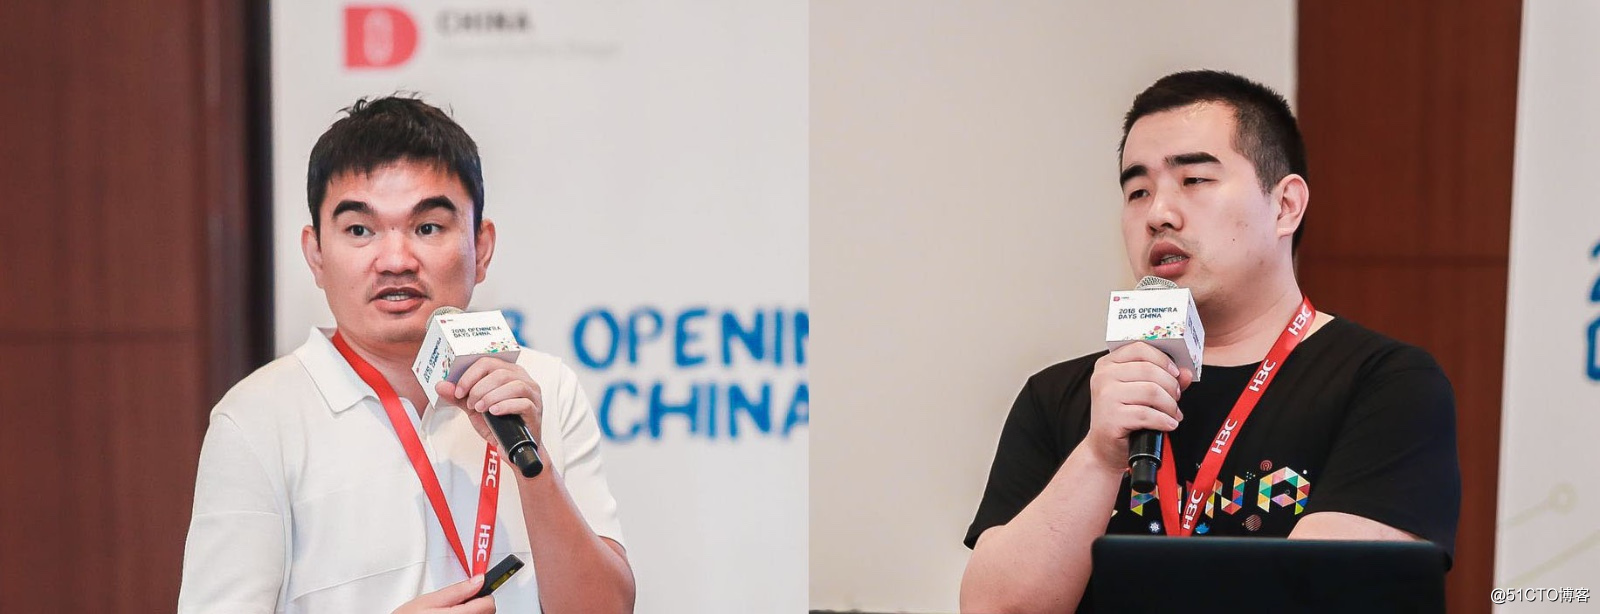 精彩议题回顾 | 2018 OpenInfra Days China，九州云火力全开